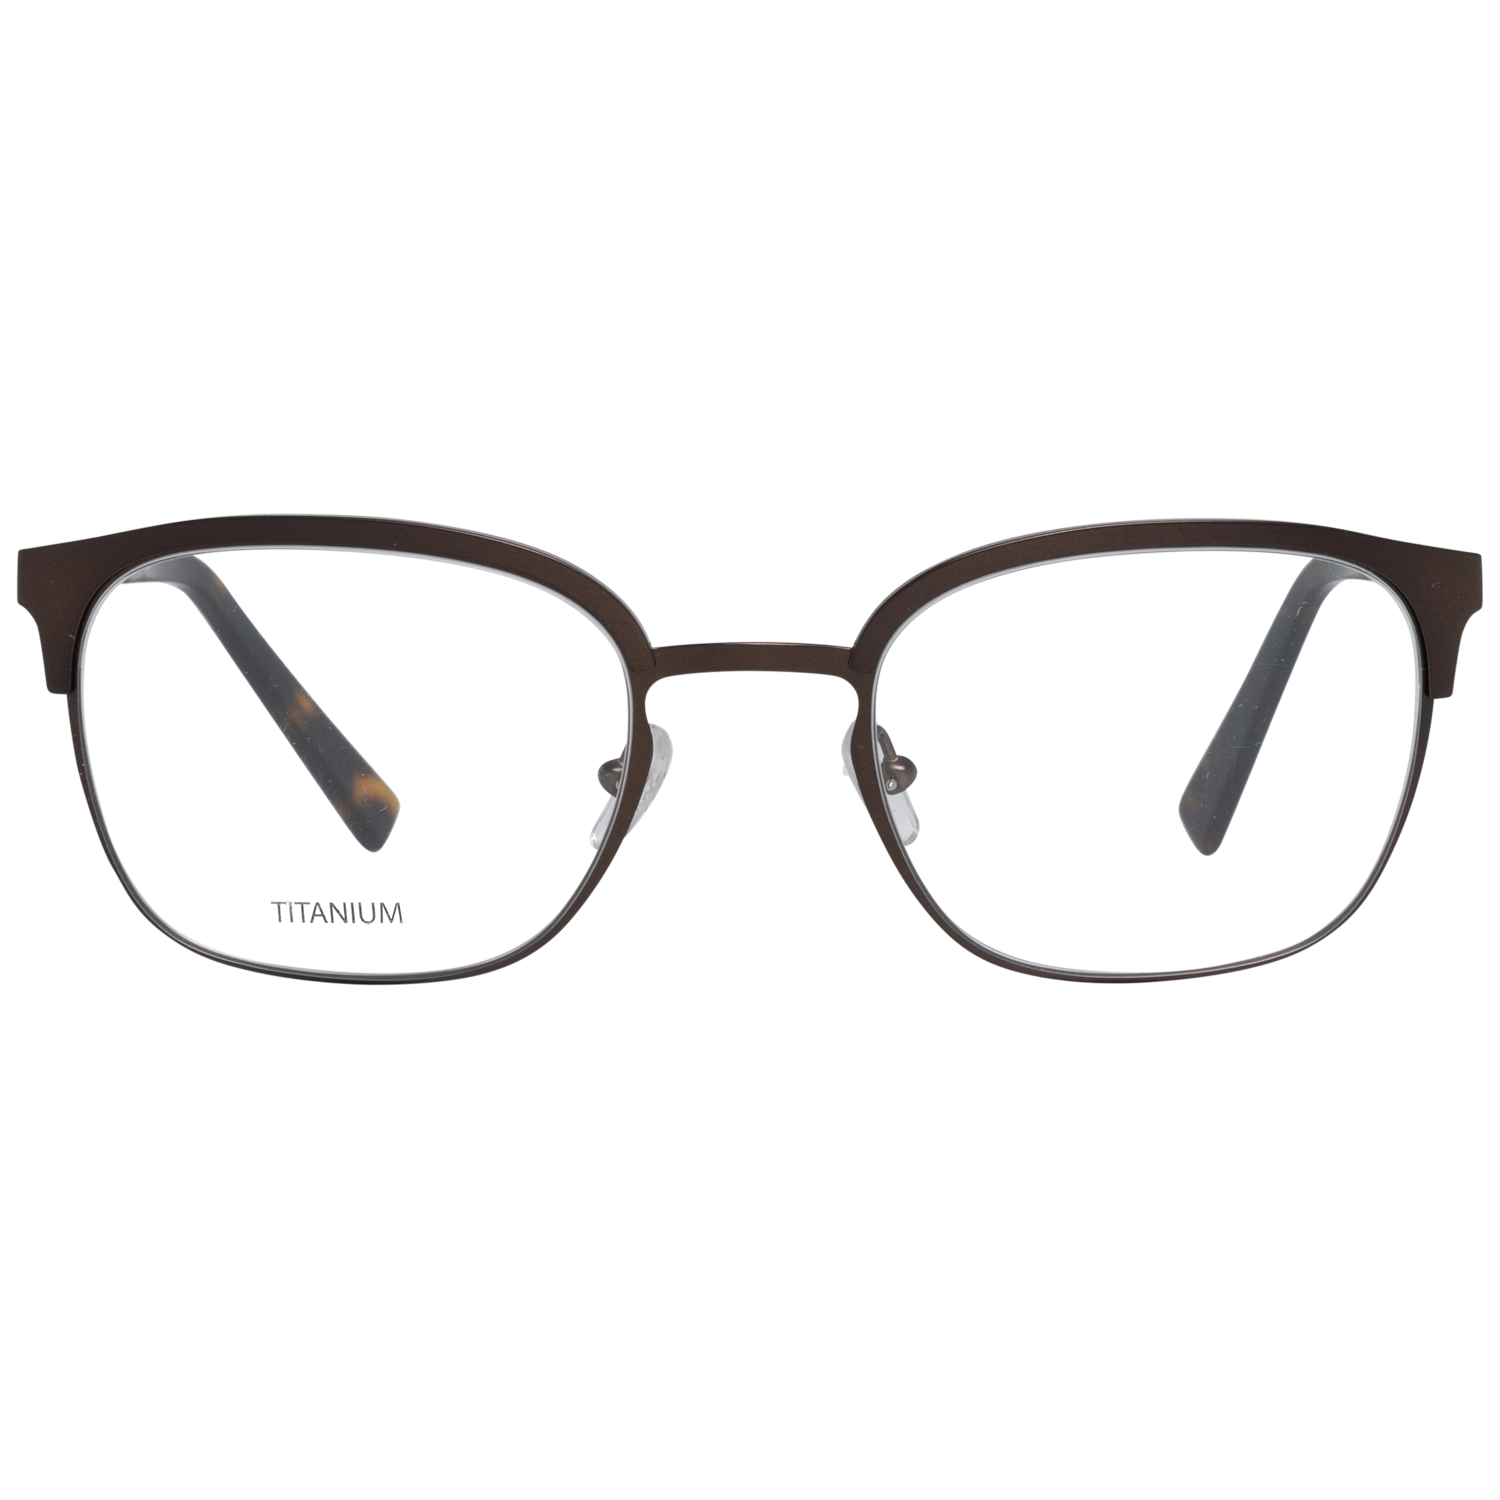 Ermenegildo Zegna Frames Ermenegildo Zegna Glasses Optical Frame EZ5038 029 50 Titanium Eyeglasses Eyewear UK USA Australia 